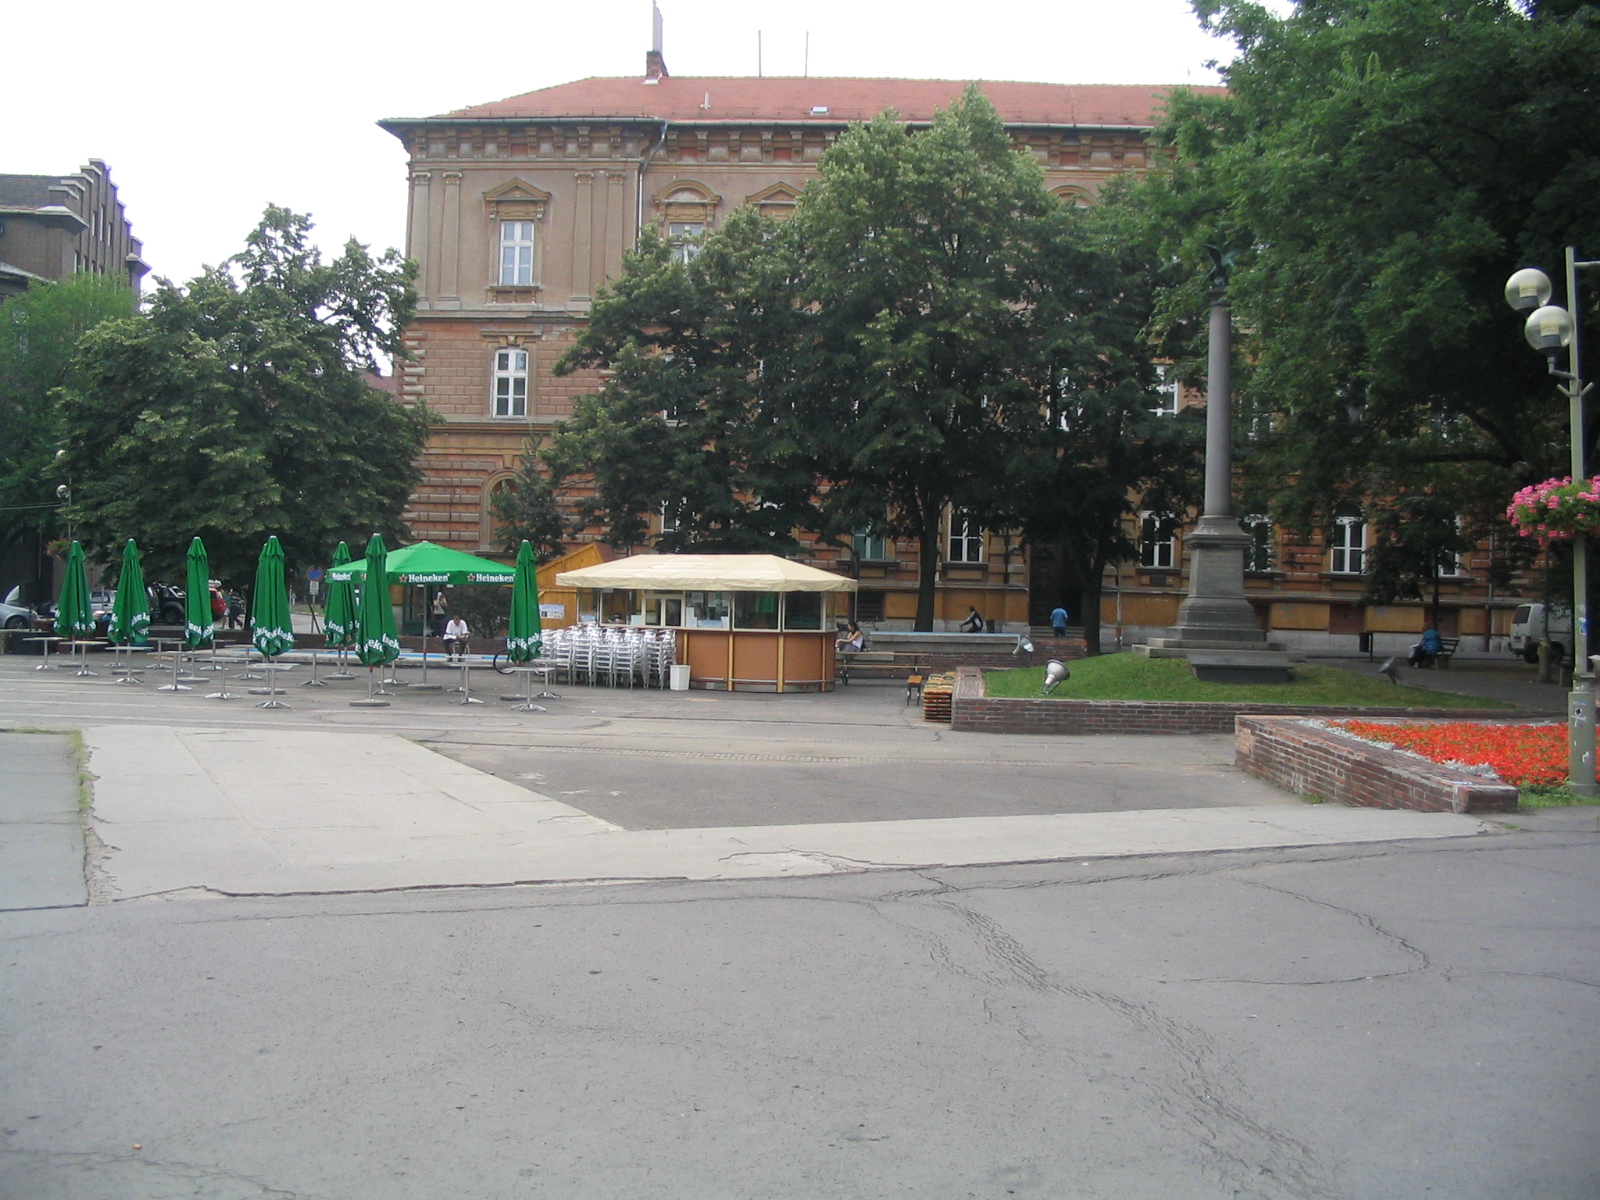 Aradi square